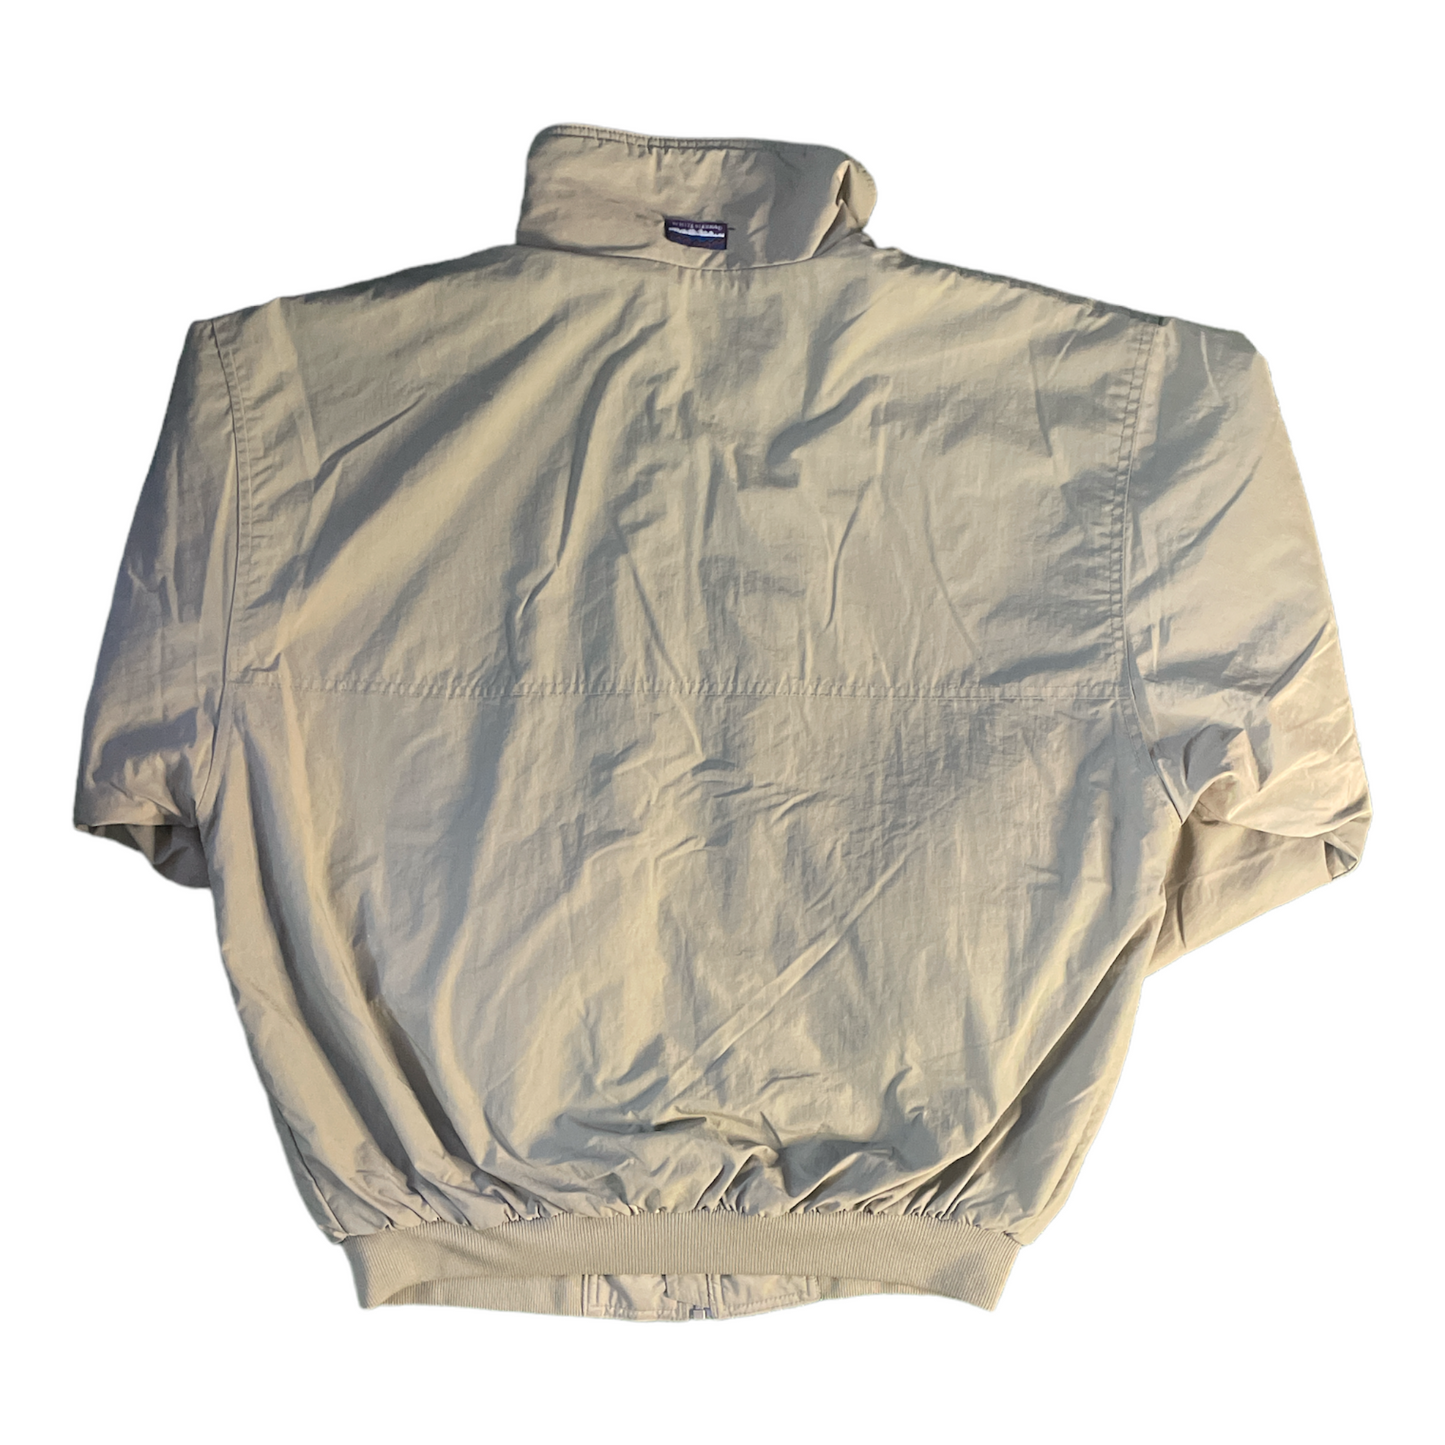 Whiteside Jacket Embroider XL